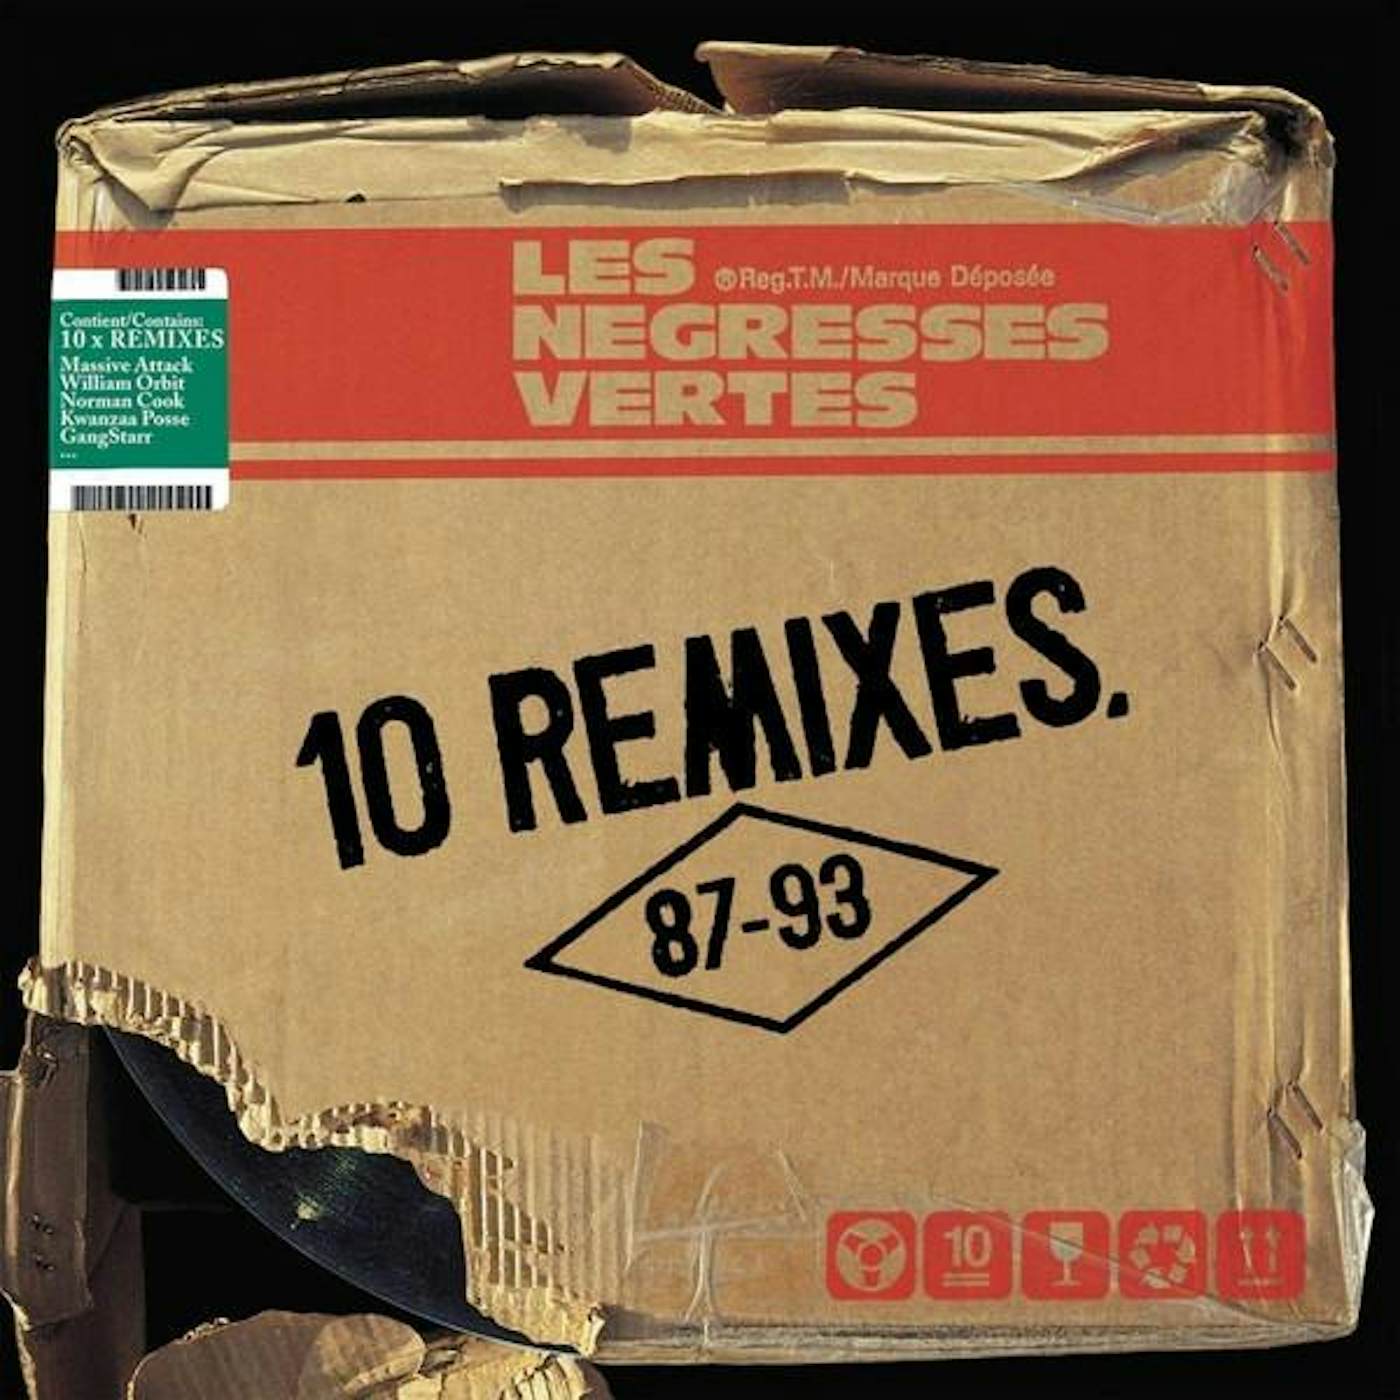 Les Négresses Vertes 10 Remixes (87-93) - 2x12" Vinyl + CD